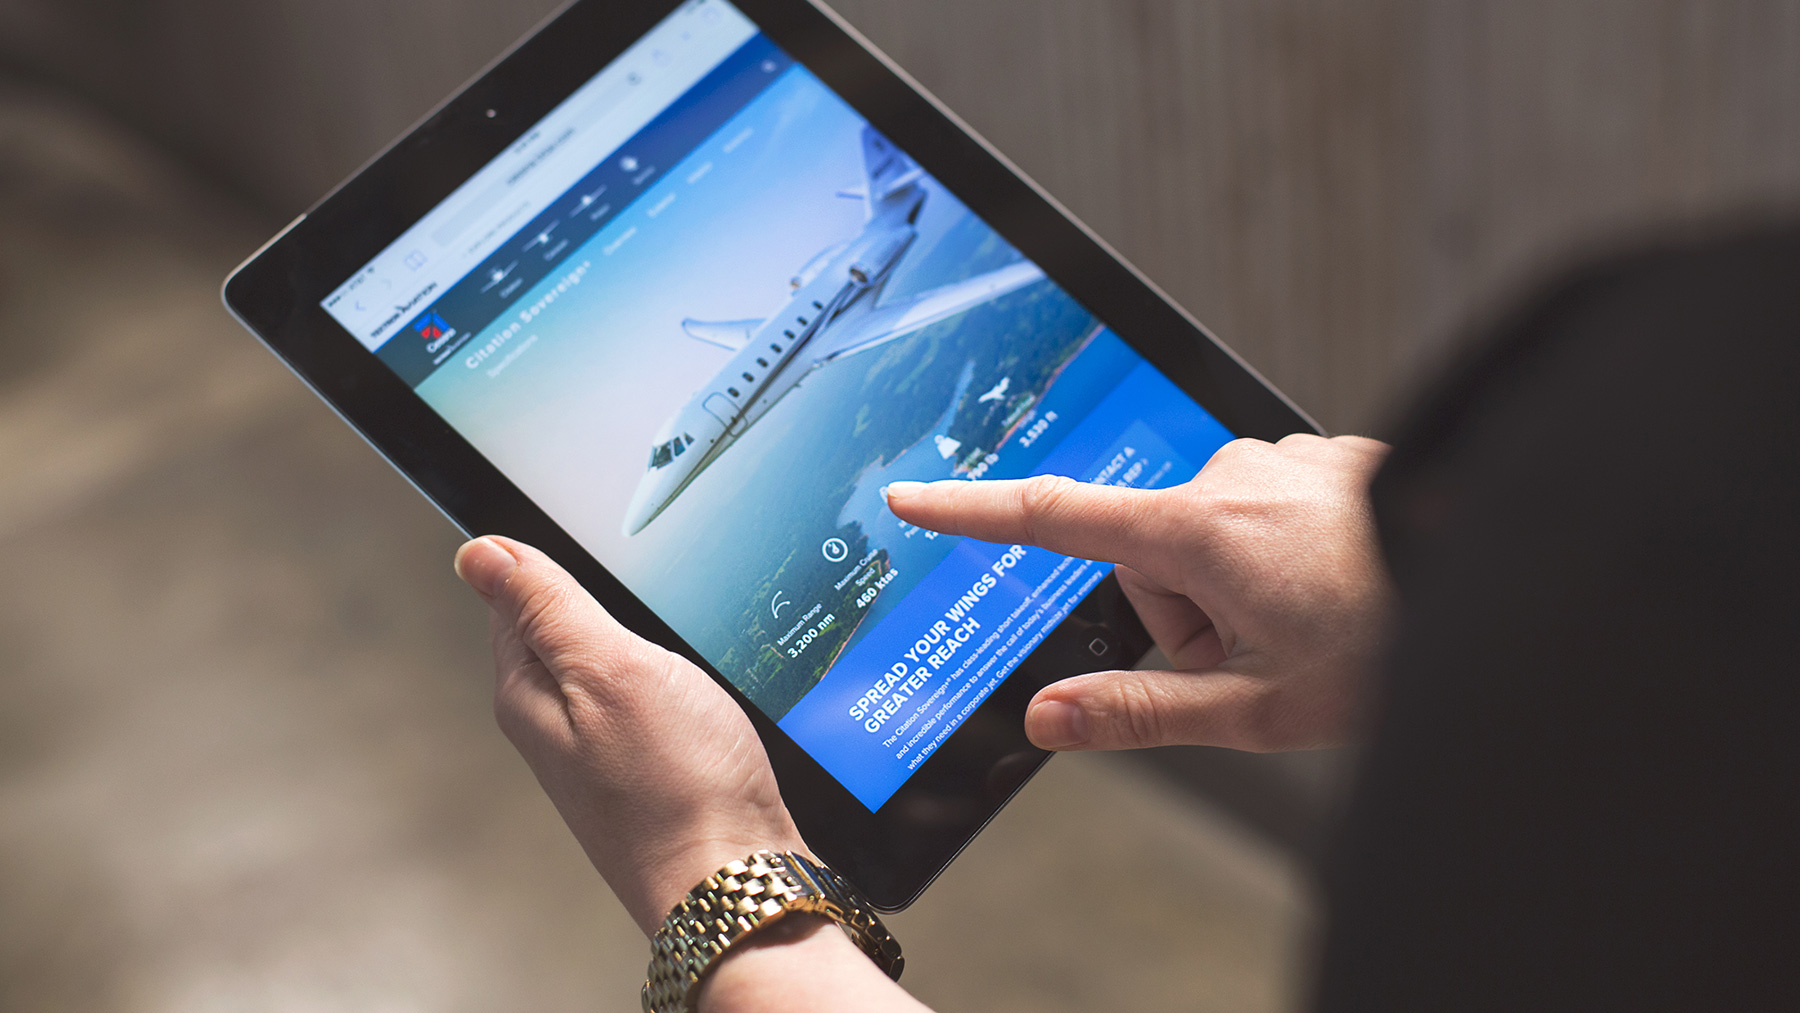 Aviation website on tablet